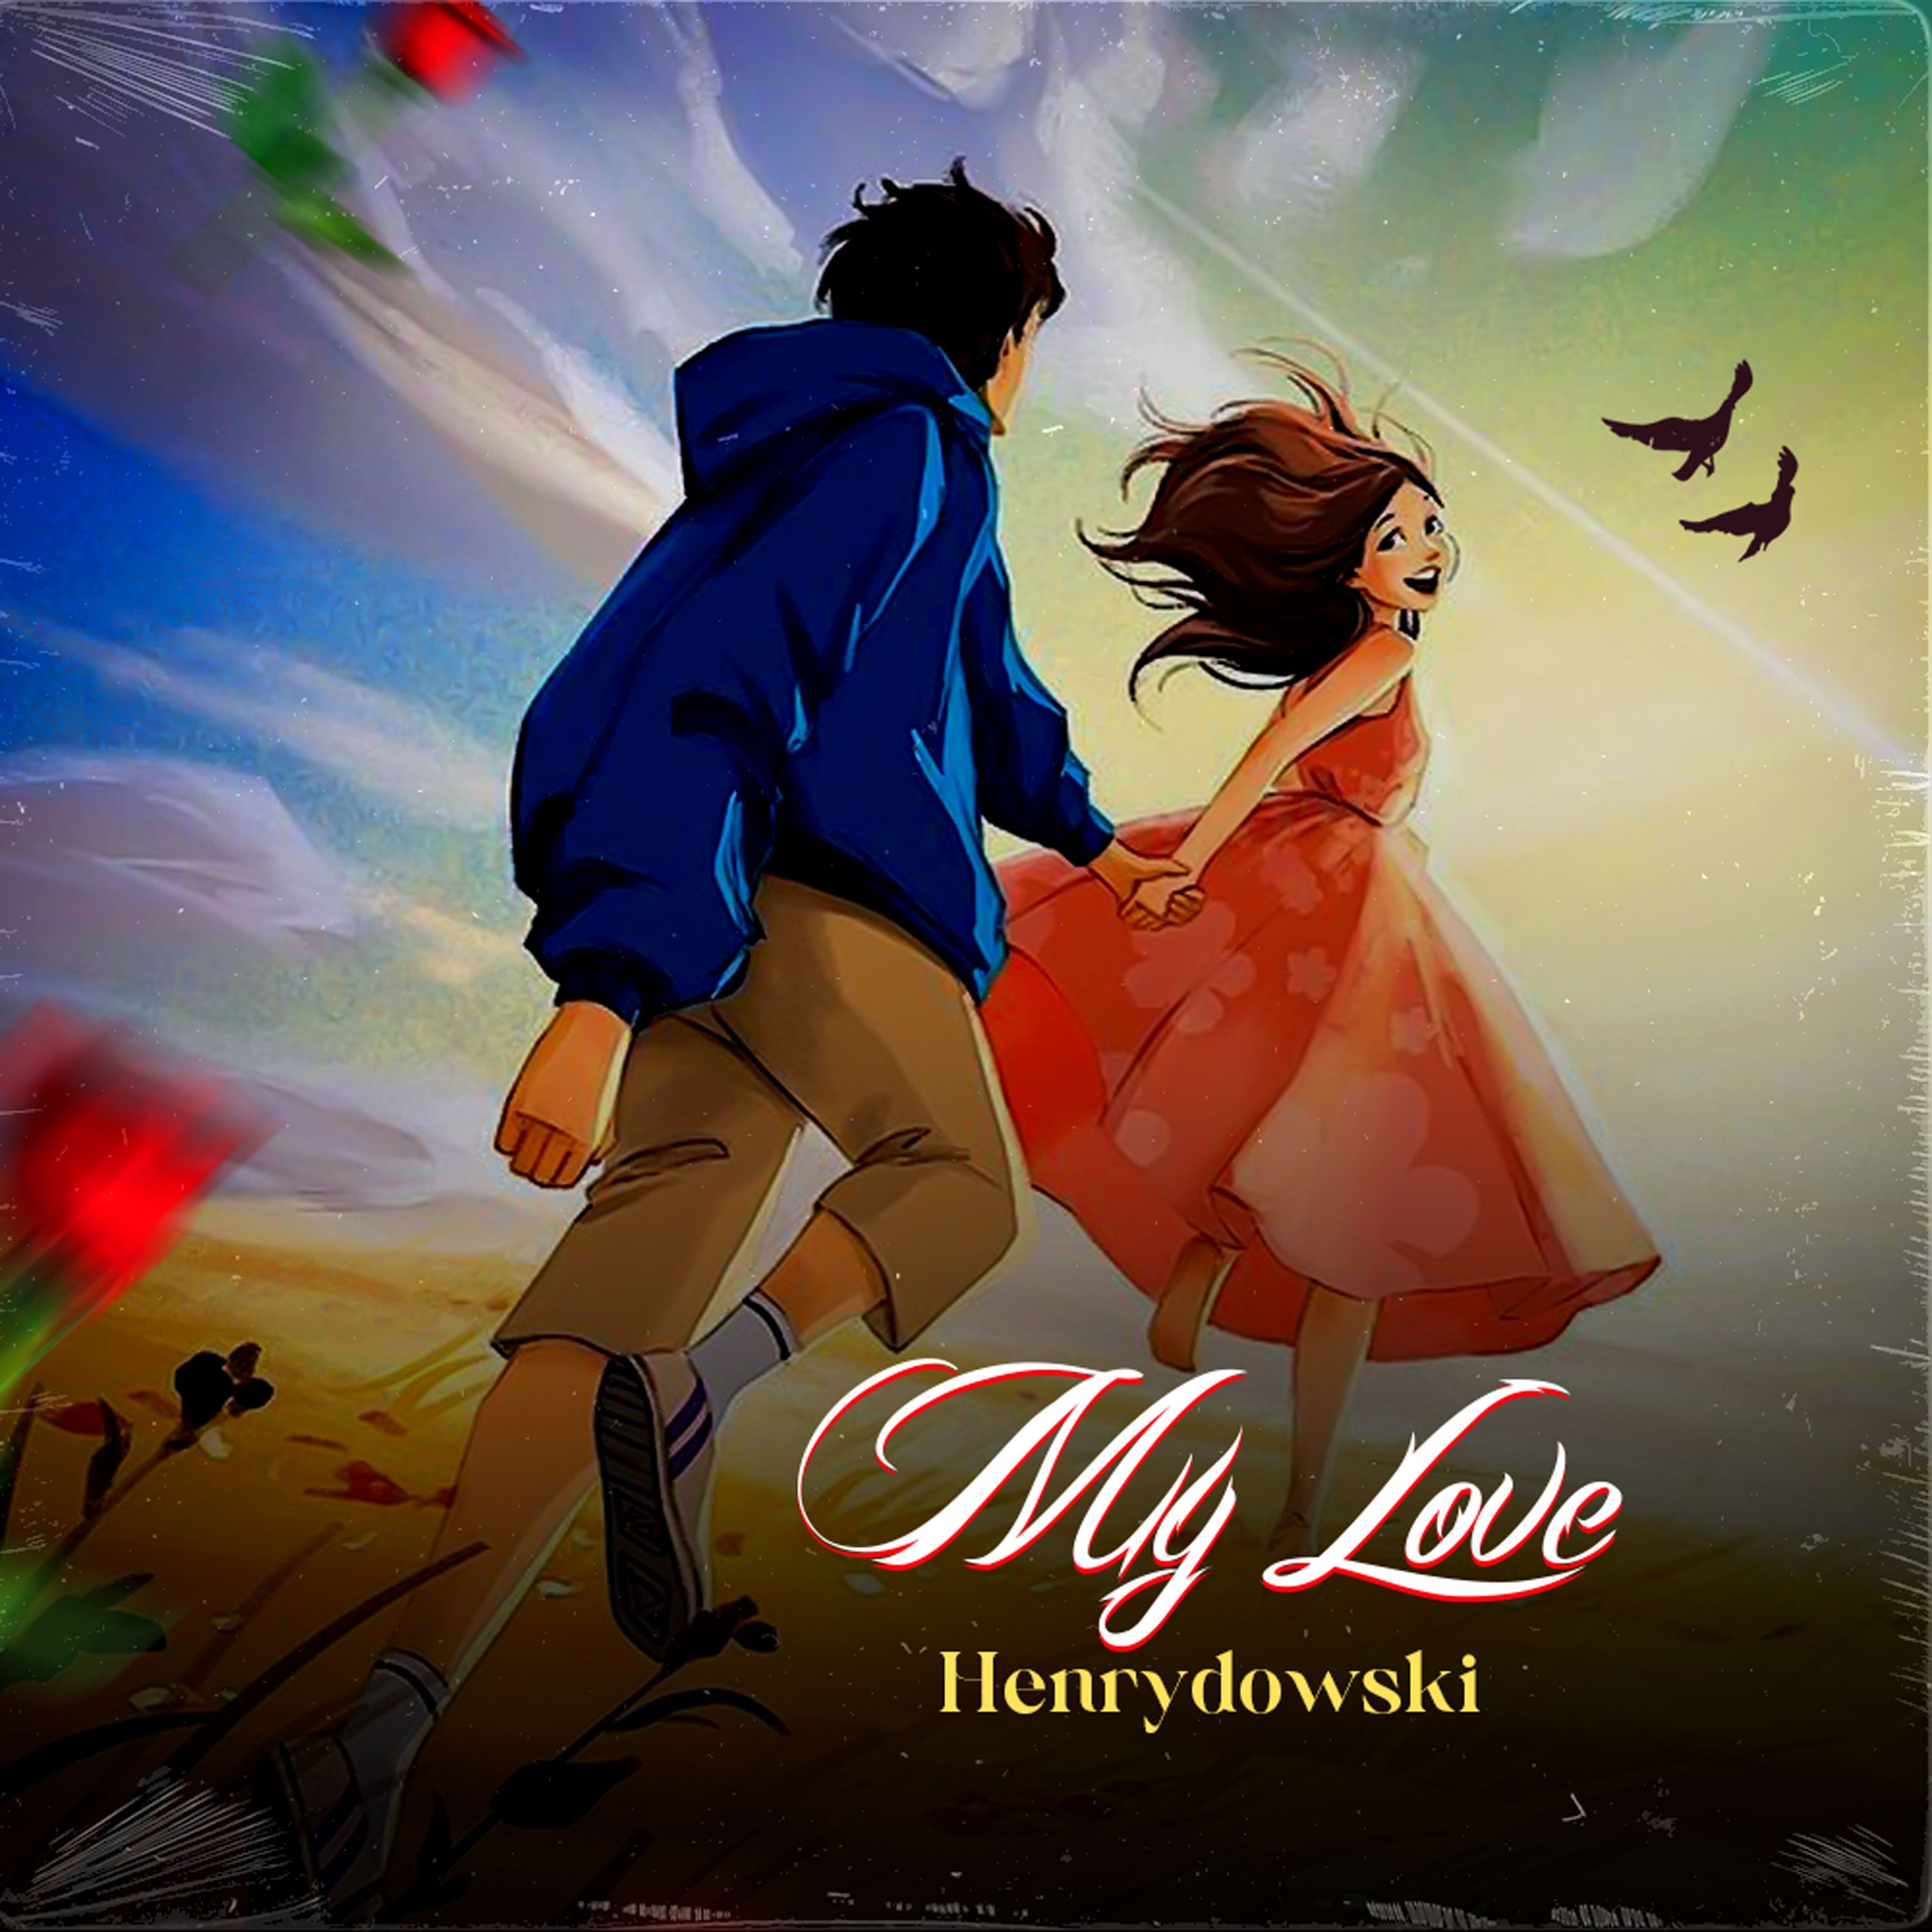 Henrydowski - My love